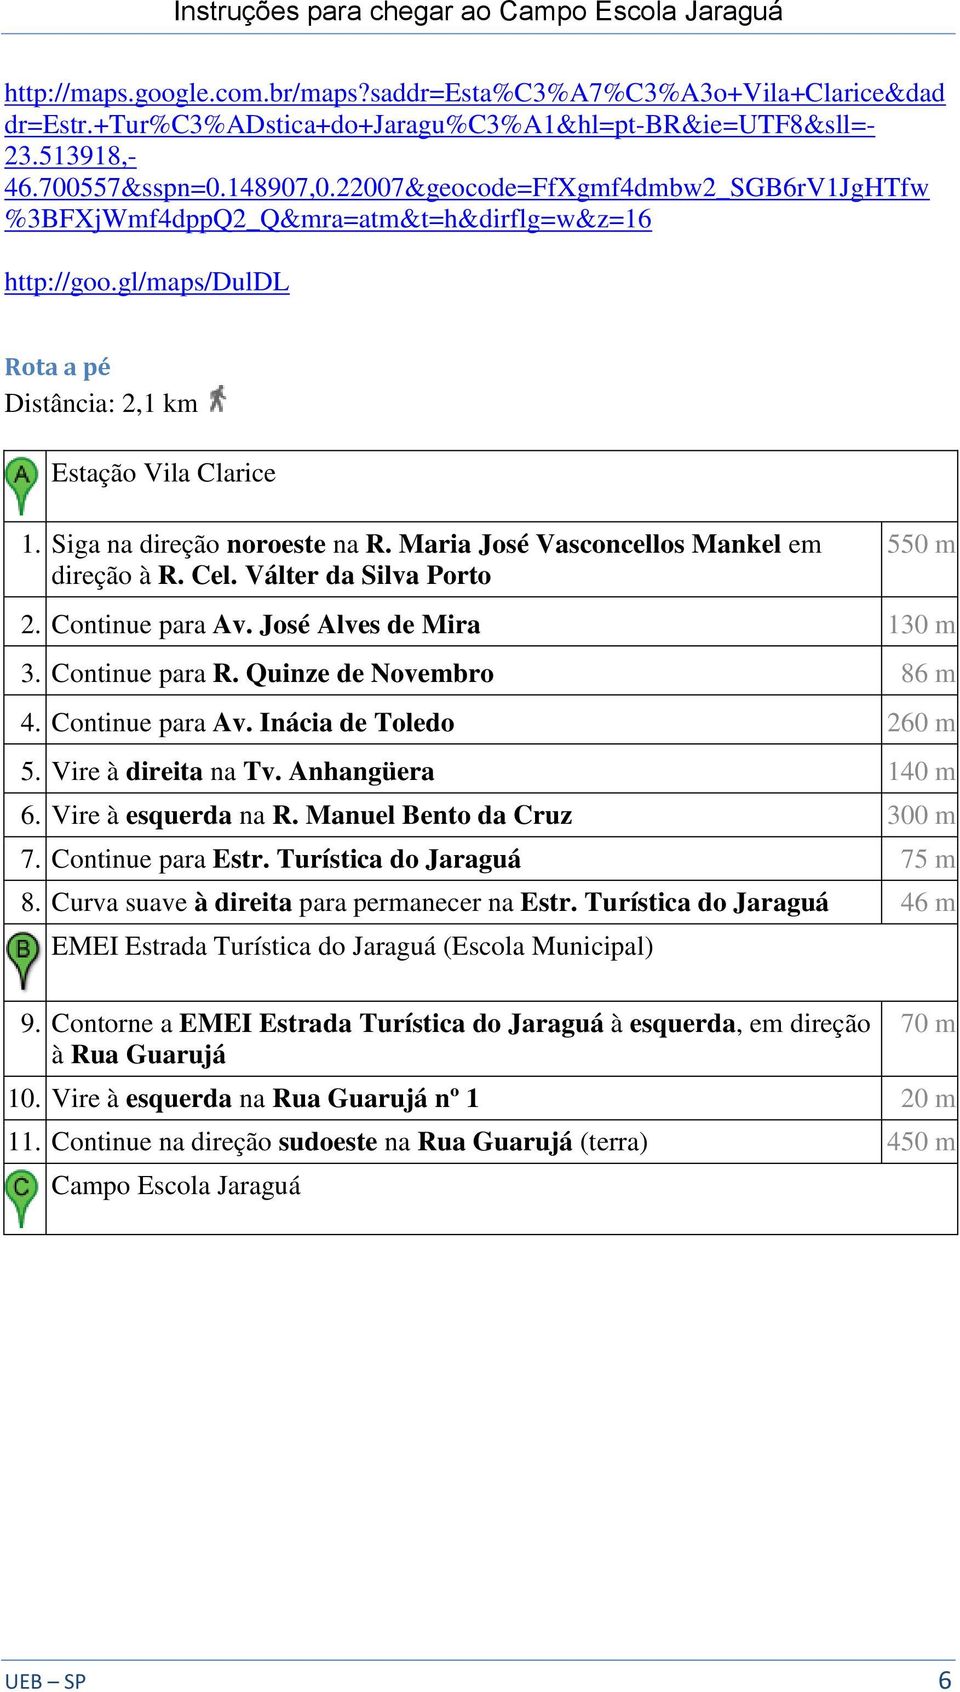 Maria José Vasconcellos Mankel em direção à R. Cel. Válter da Silva Porto 550 m 2. Continue para Av. José Alves de Mira 130 m 3. Continue para R. Quinze de Novembro 86 m 4. Continue para Av. Inácia de Toledo 260 m 5.